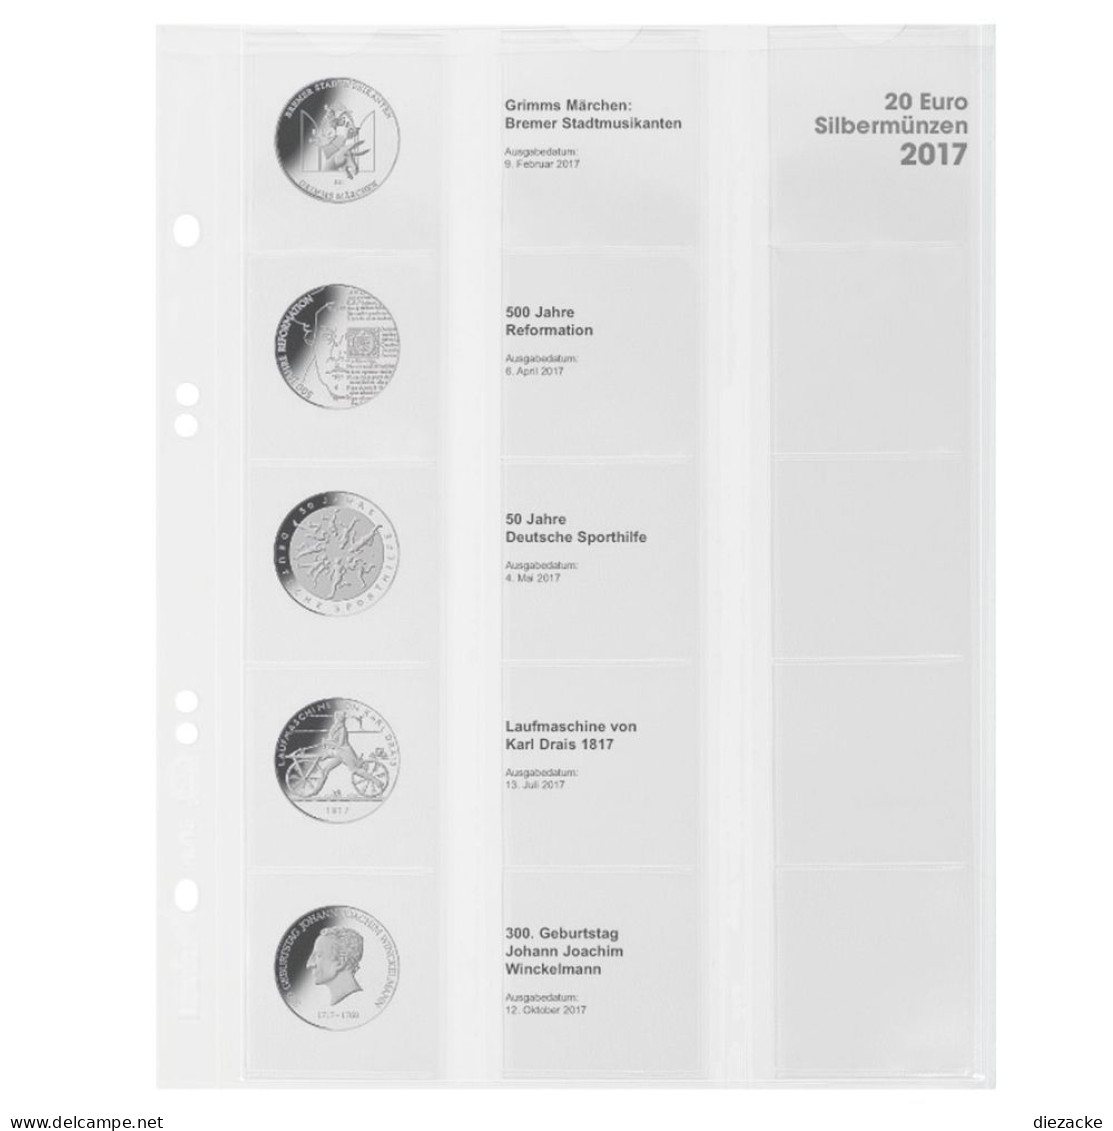 Lindner Vordruckblatt Publica M Für 20 Euro-Silbermünzen MU20E17 Neu - Supplies And Equipment